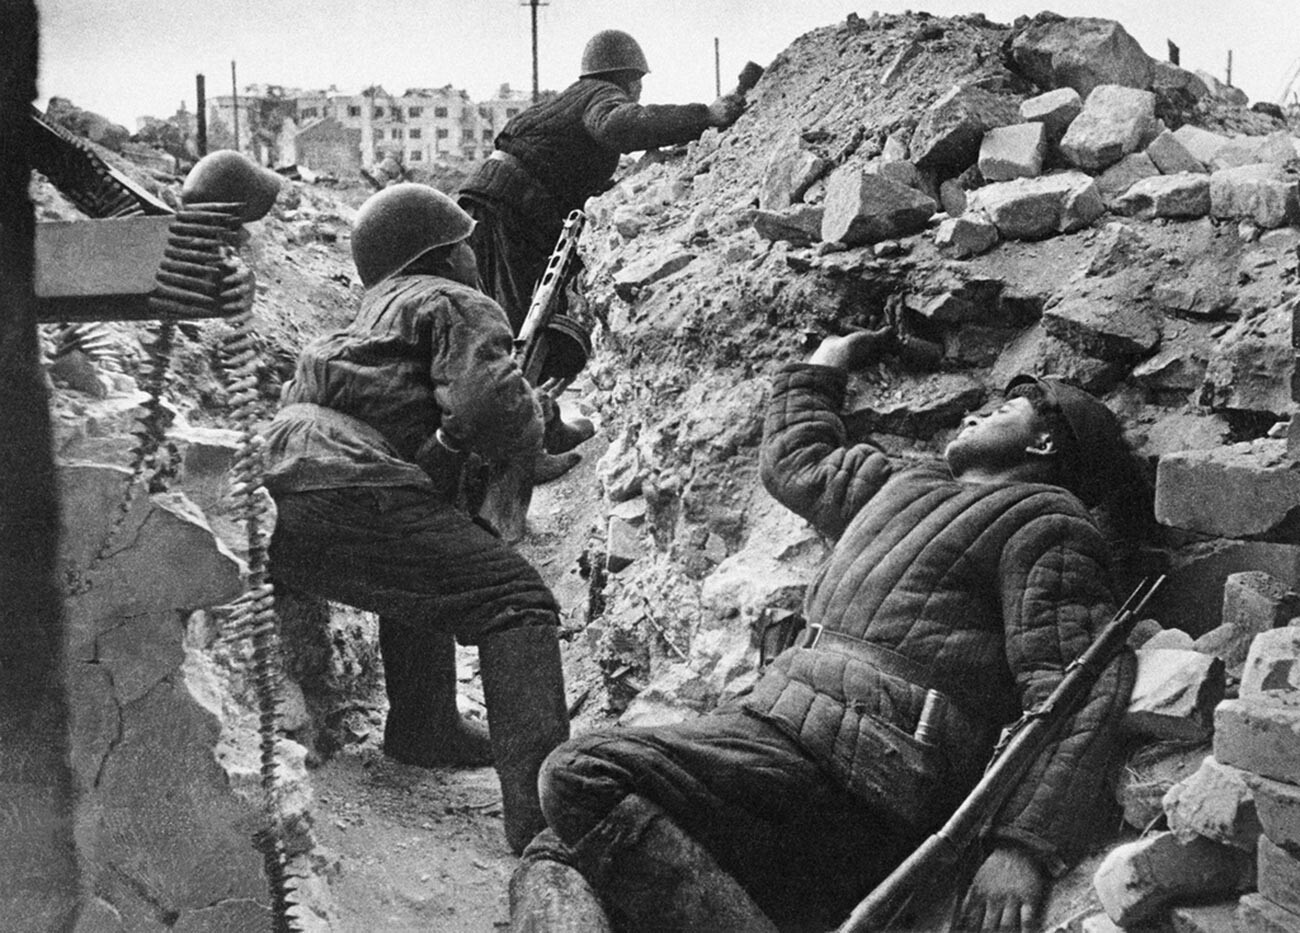 Soviet troops in Stalingrad.